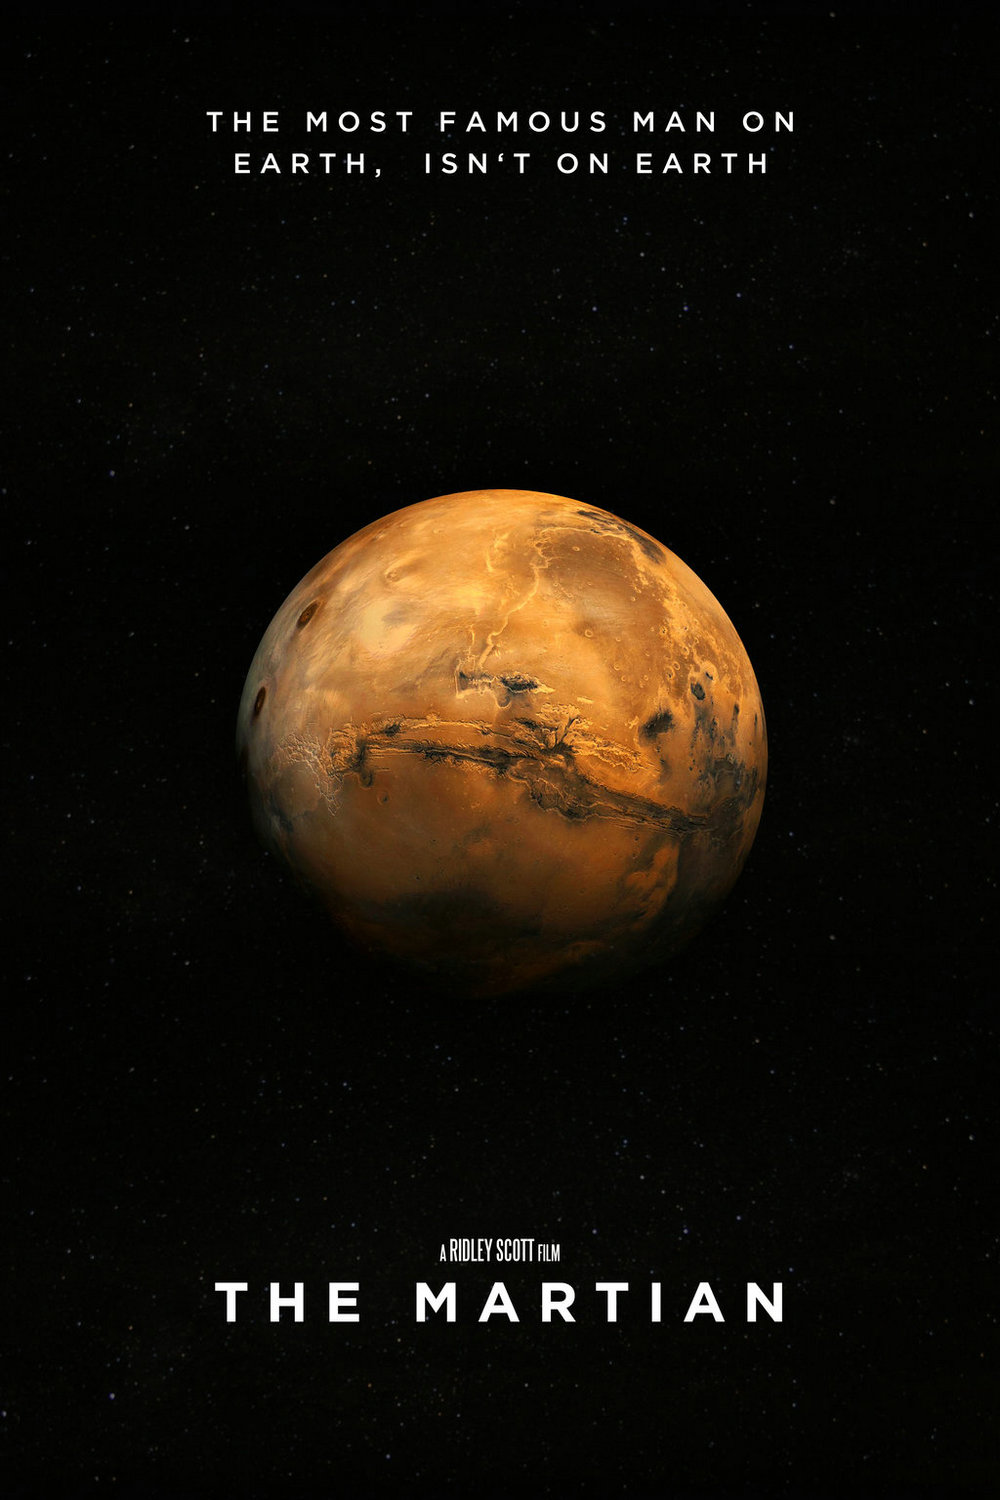 The-Martian